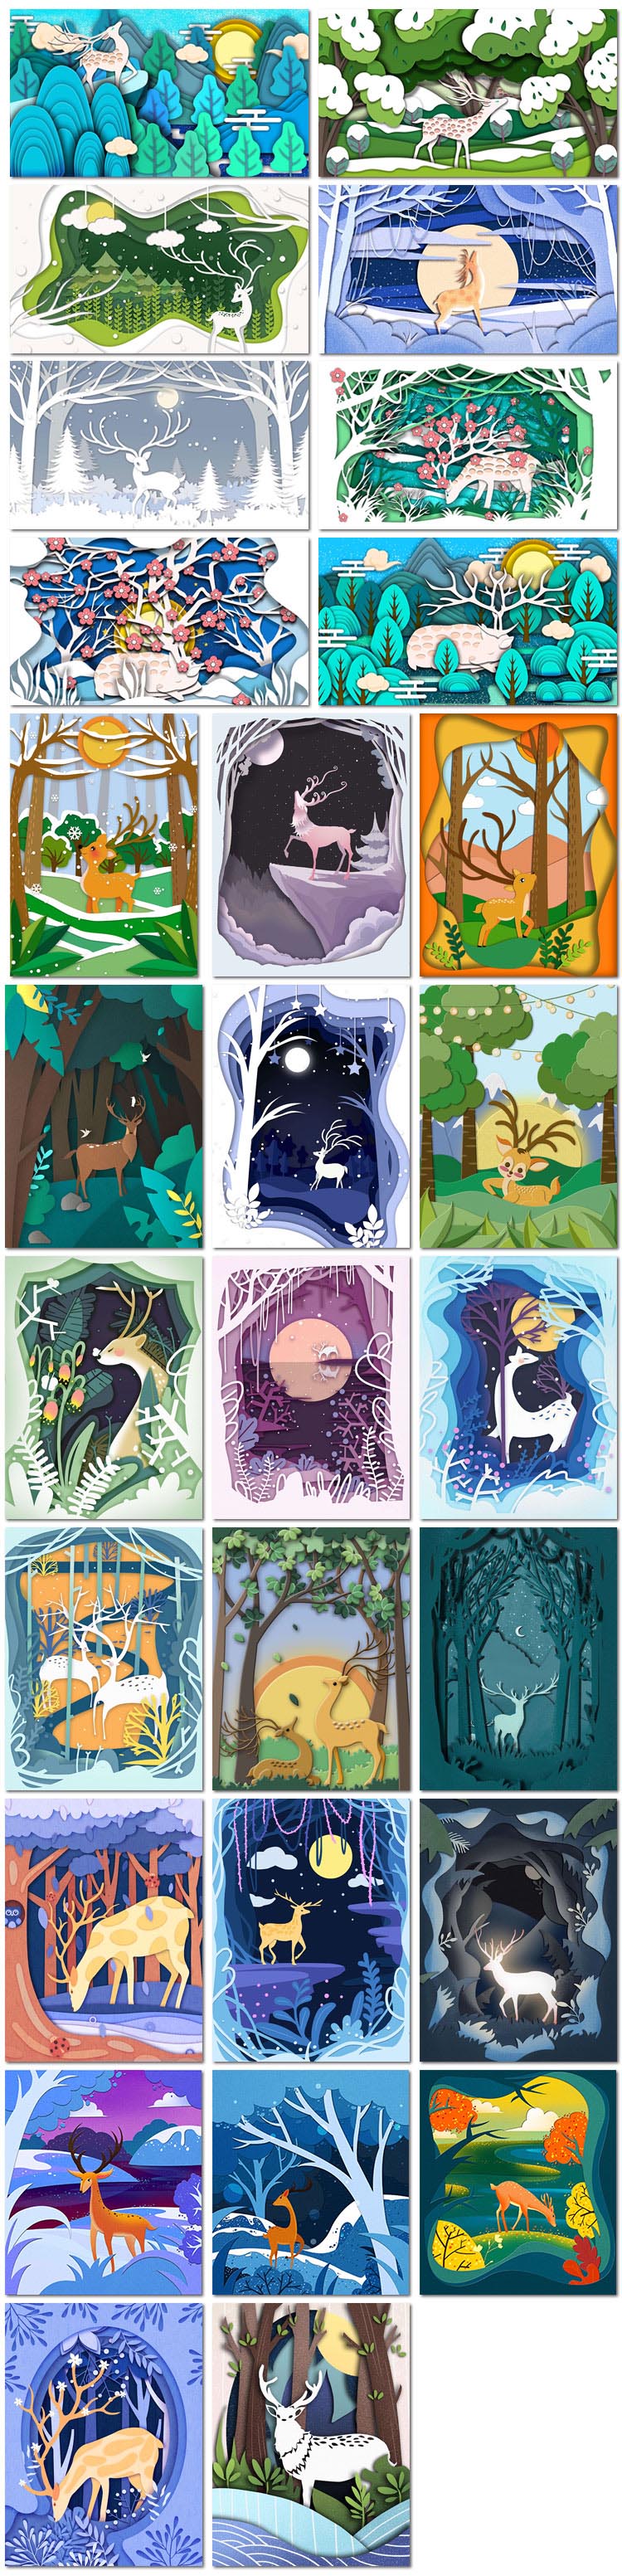 28张剪纸风森林与鹿折纸树林麋鹿唯美卡通海报插画psd模板素材设计